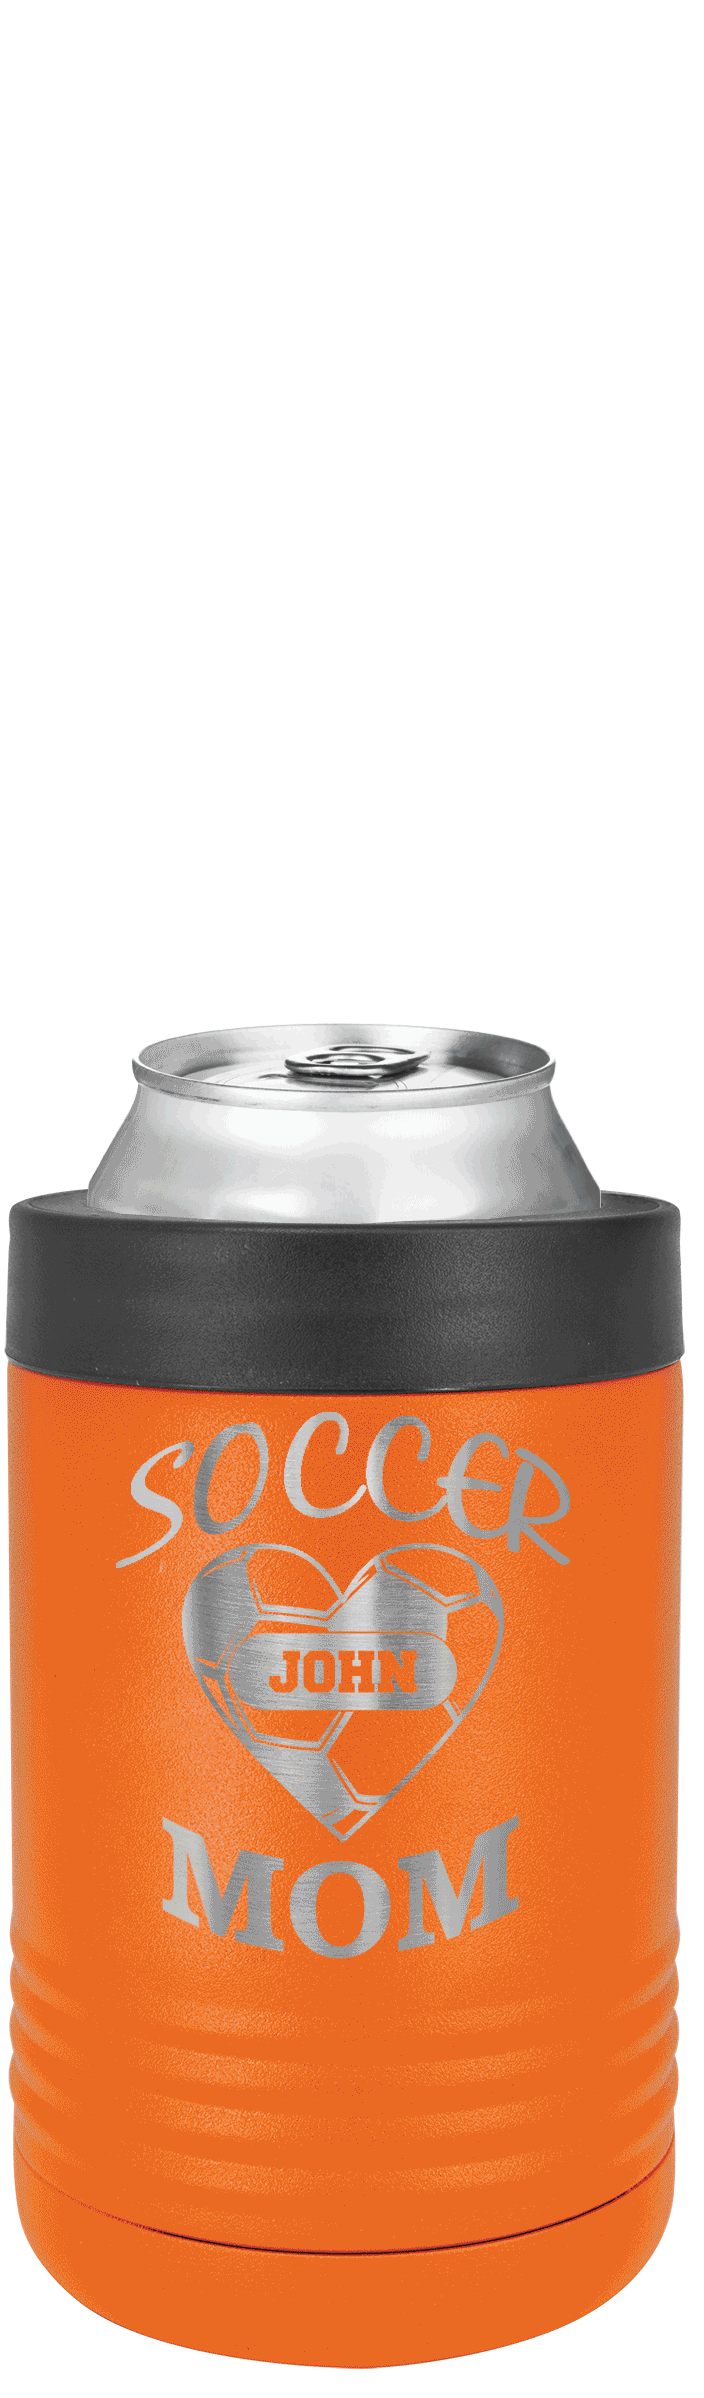 Soccer Love Beverage Holder